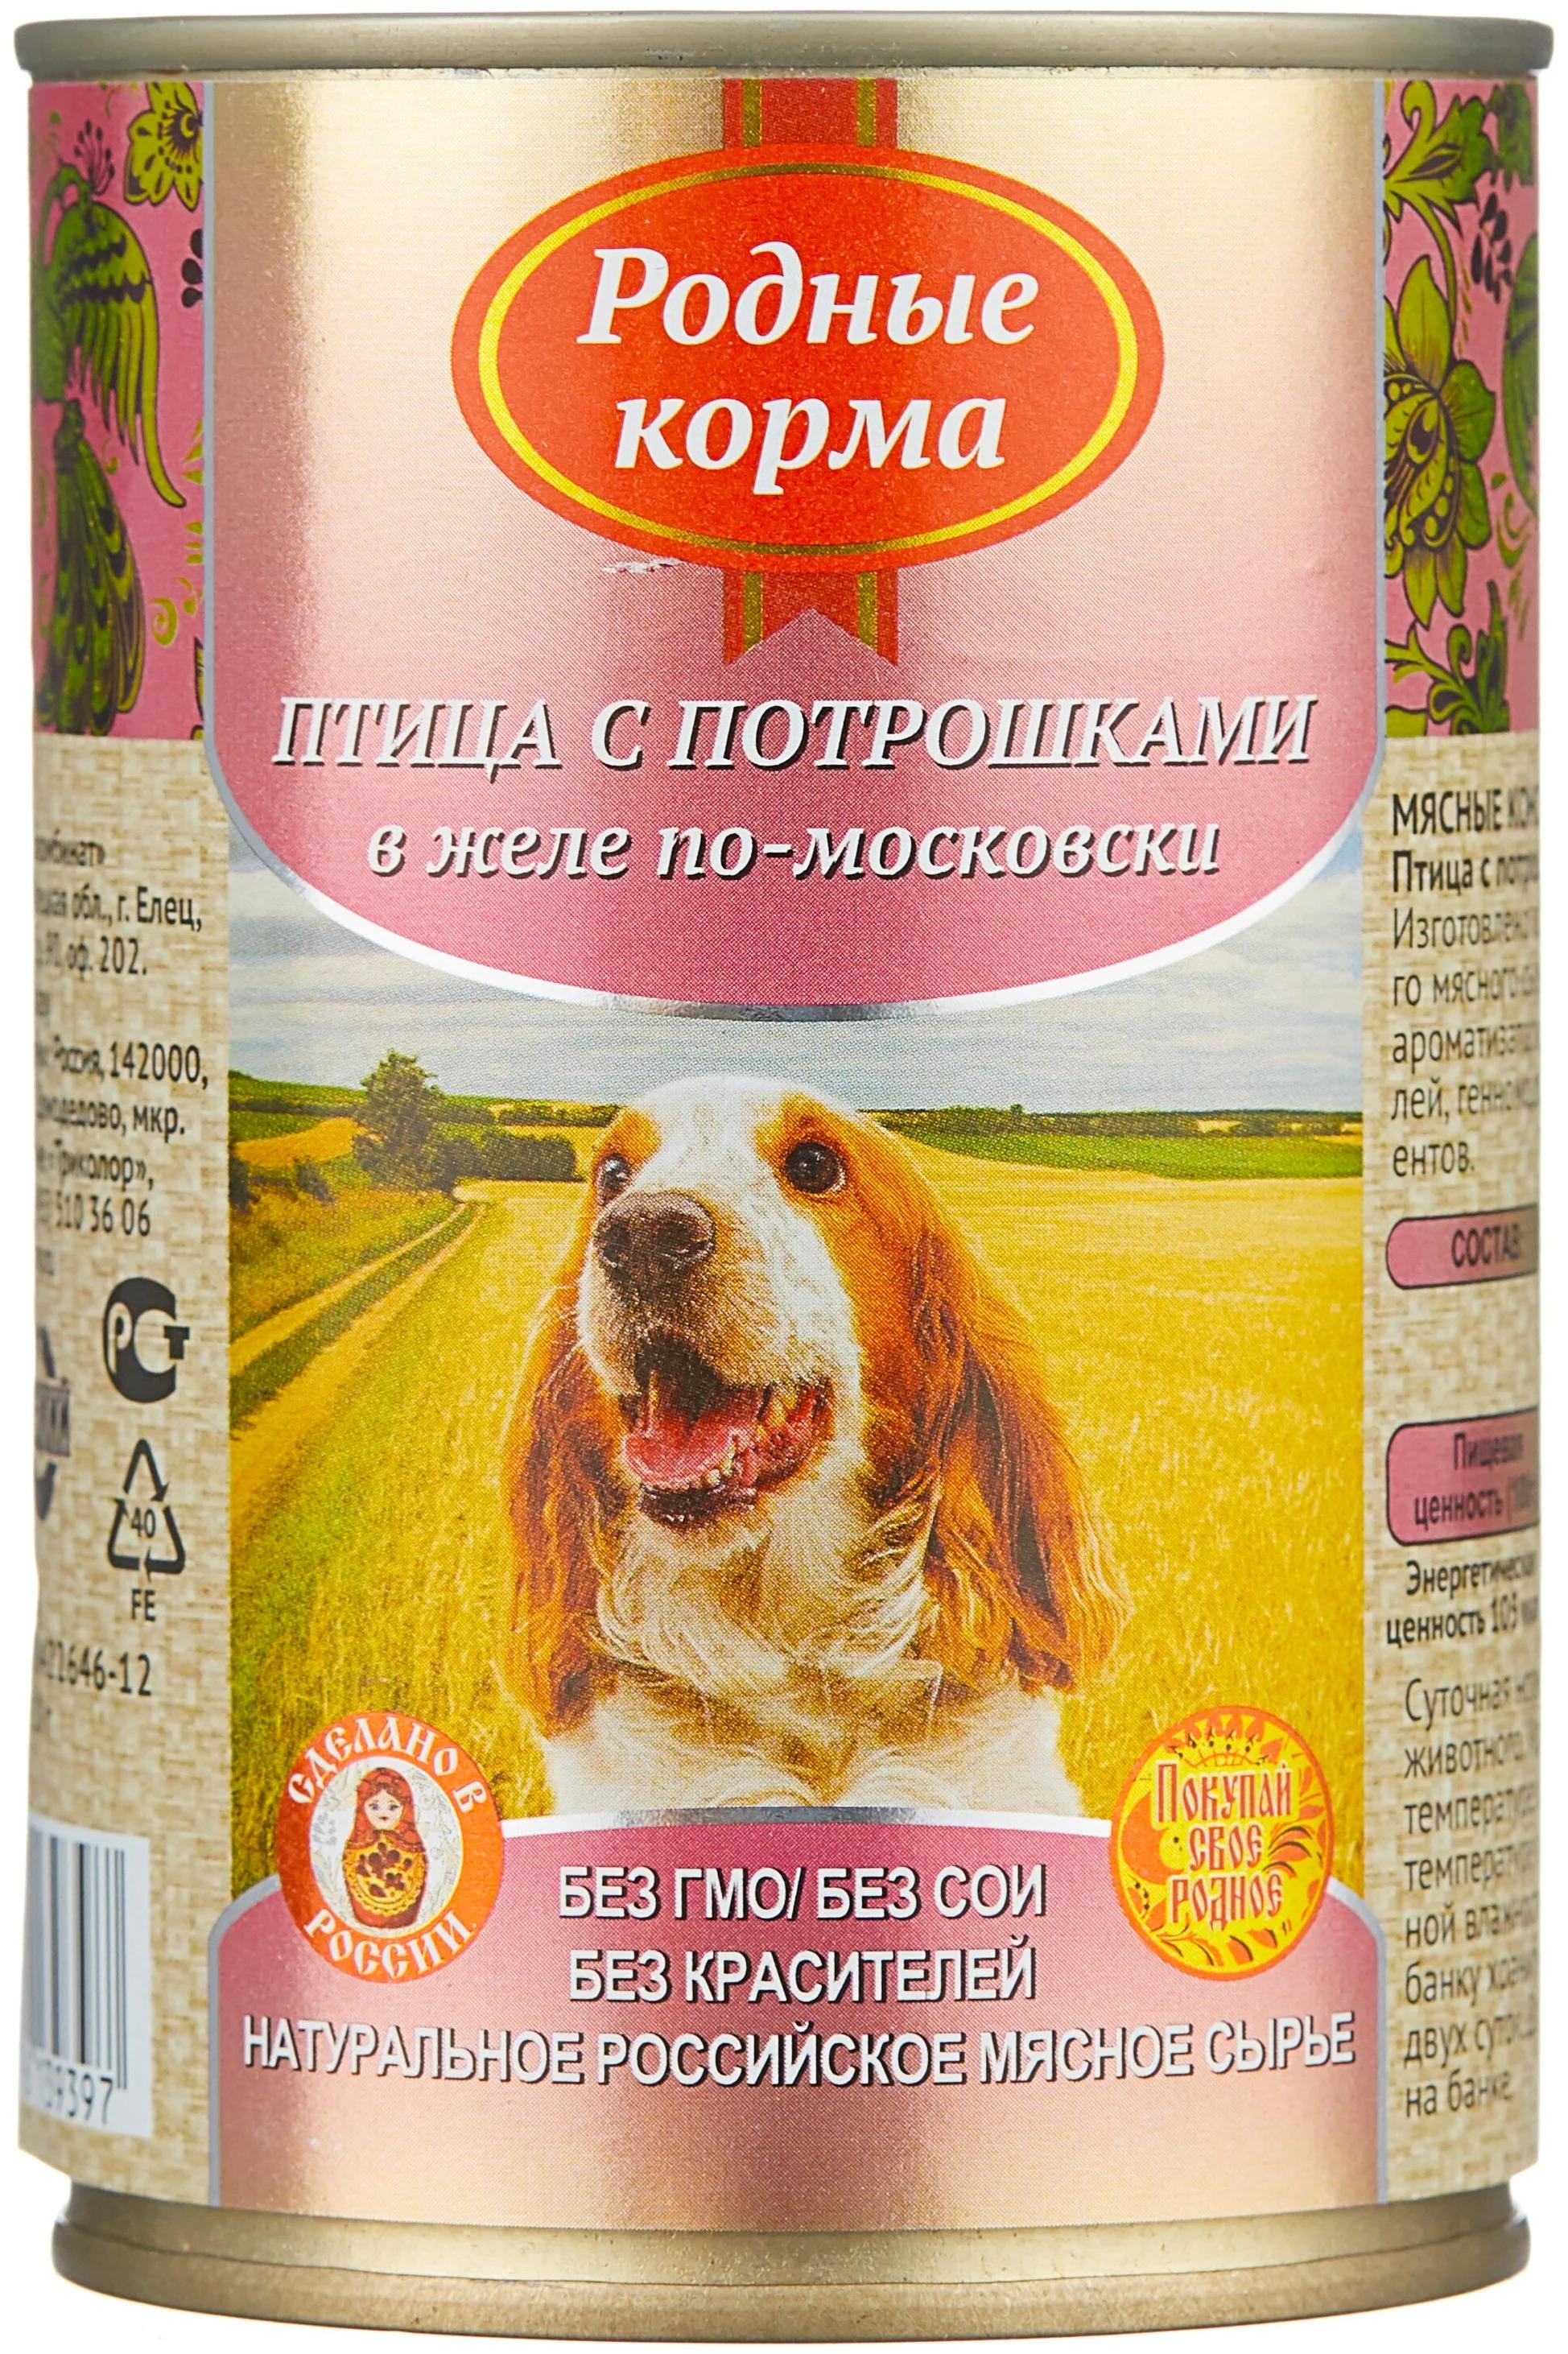 ПАК_9 РОДНЫЕ КОРМА 410 г консервы для собак птица с потрошками в желе по-московски1х9